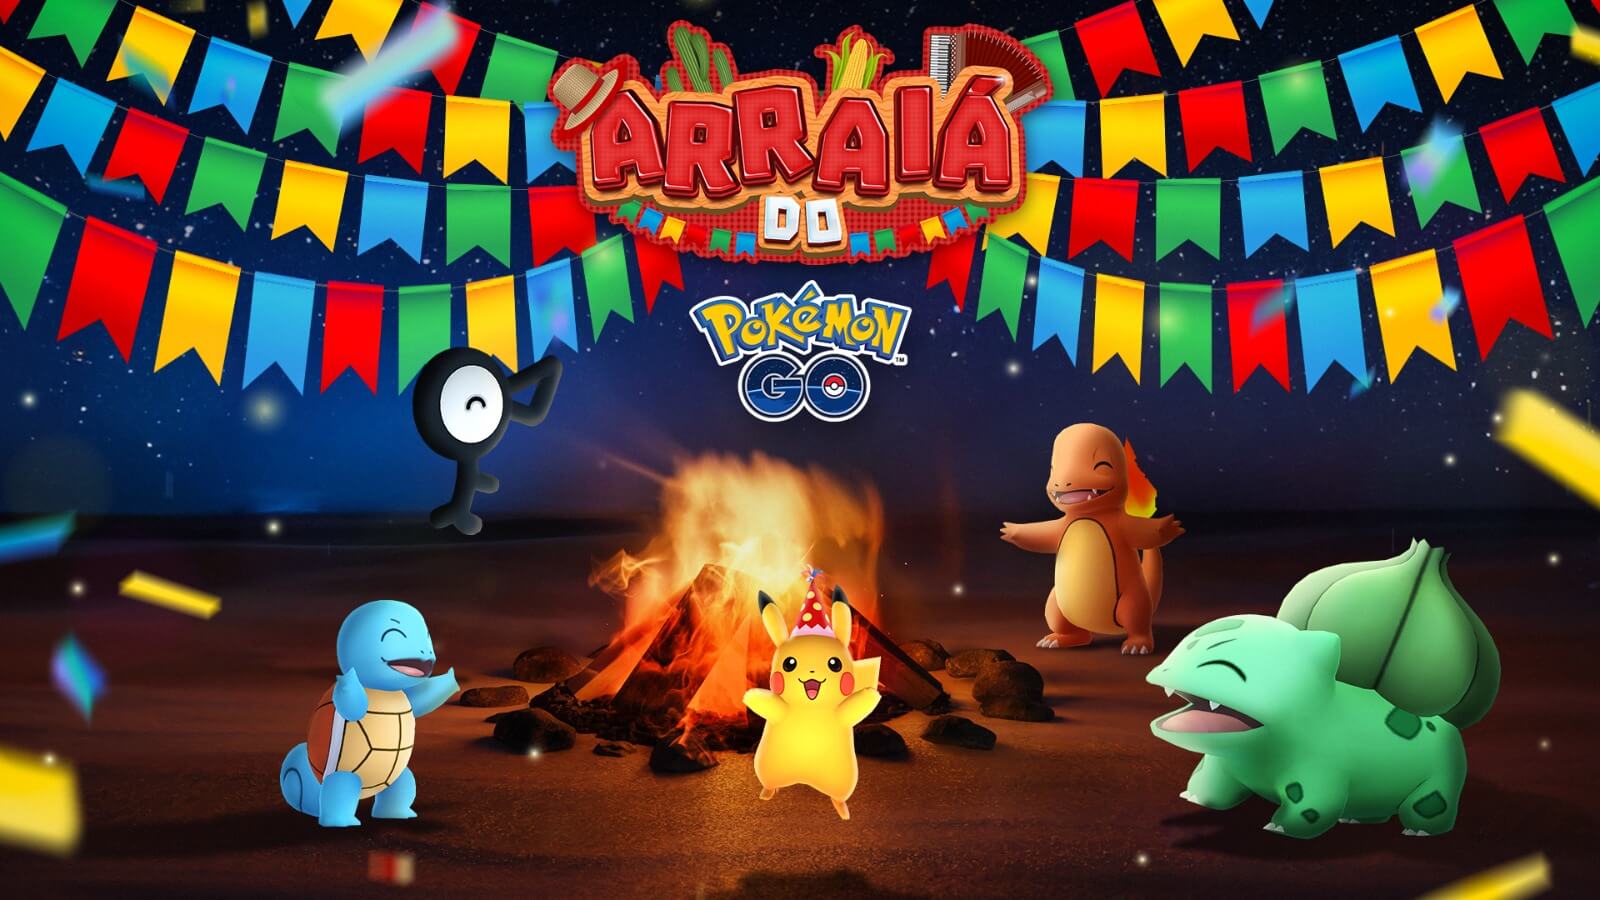 Conta Pokemon Go + Lendários + Brilhantes / Shiny - DFG